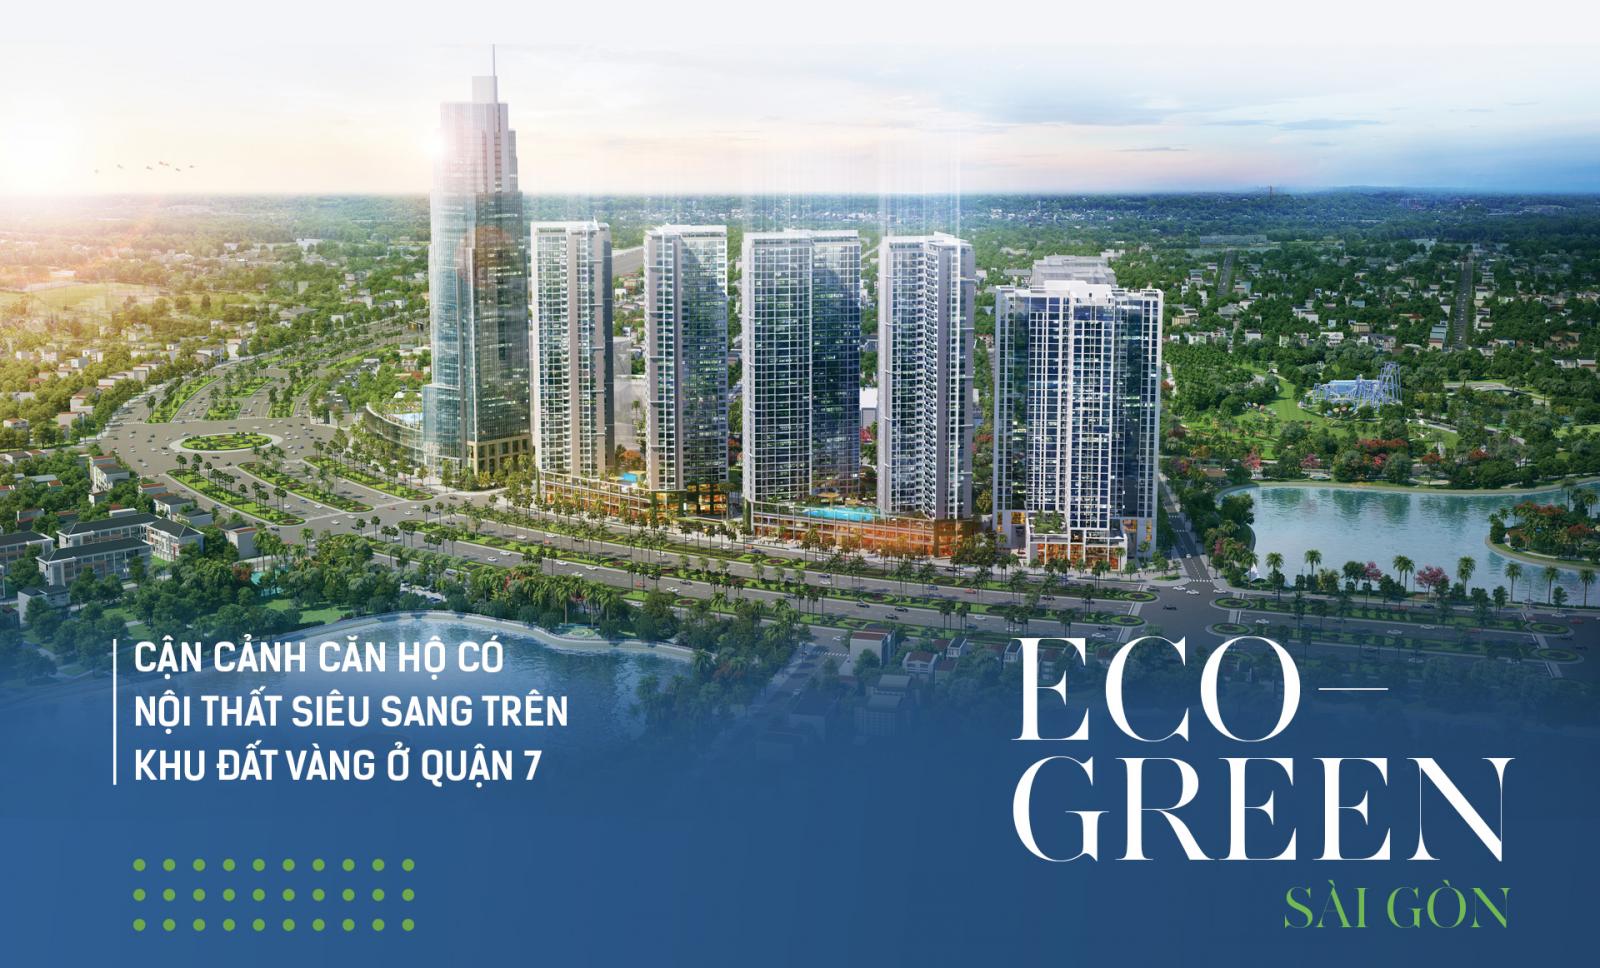 Khai trương nhà mẫu Eco Green Sài Gòn  Chiết khấu 10% khi đăng ký tham quan - 0902314662